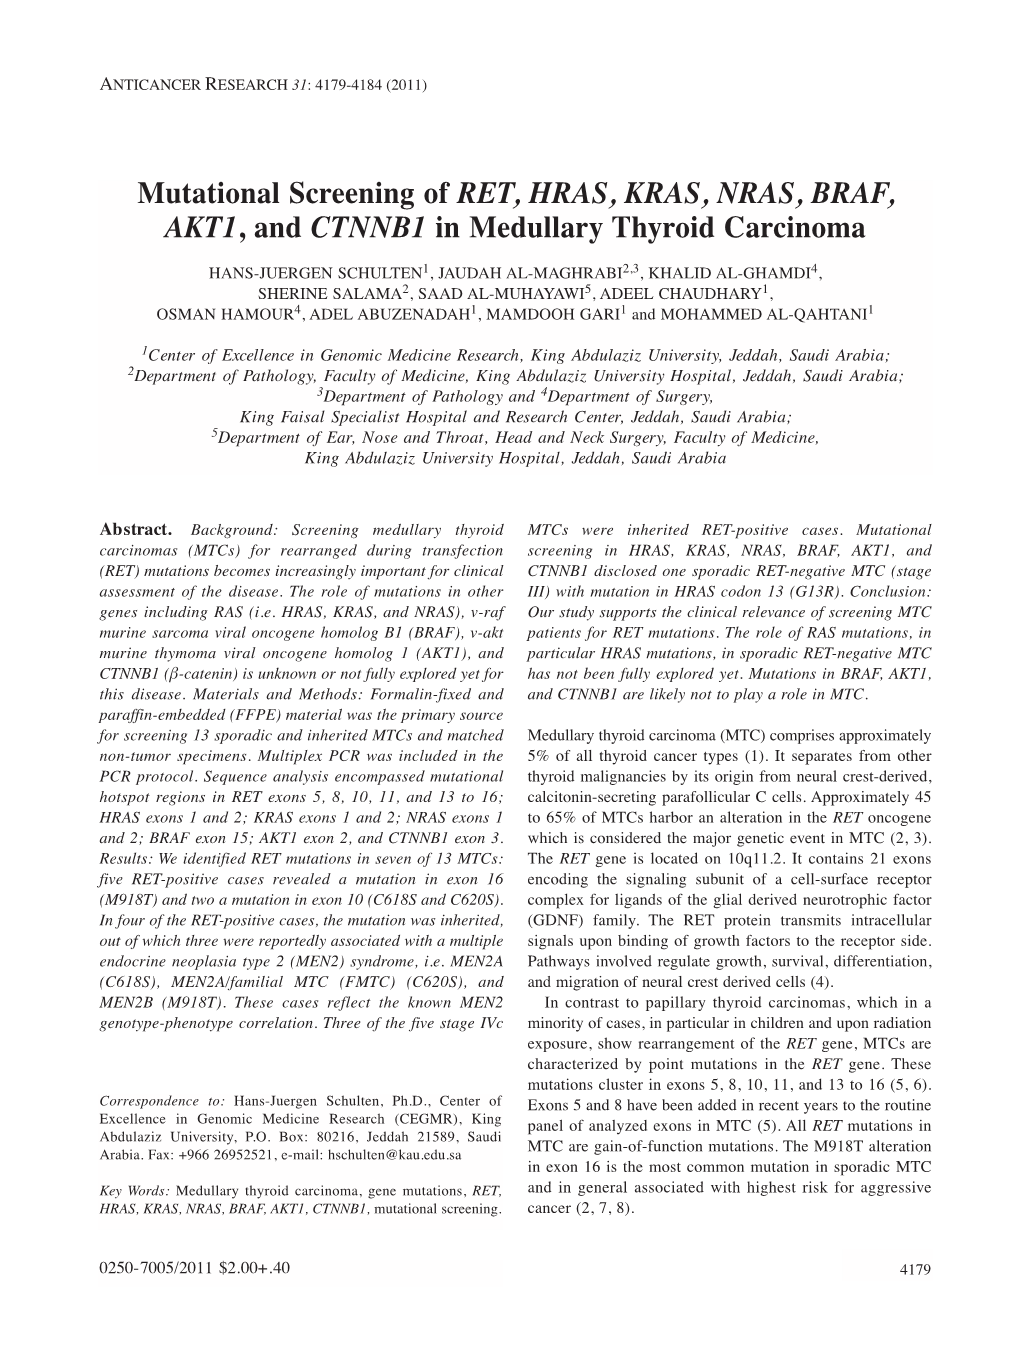 Mutational Screening of RET, HRAS, KRAS, NRAS, BRAF, AKT1, and CTNNB1 in Medullary Thyroid Carcinoma